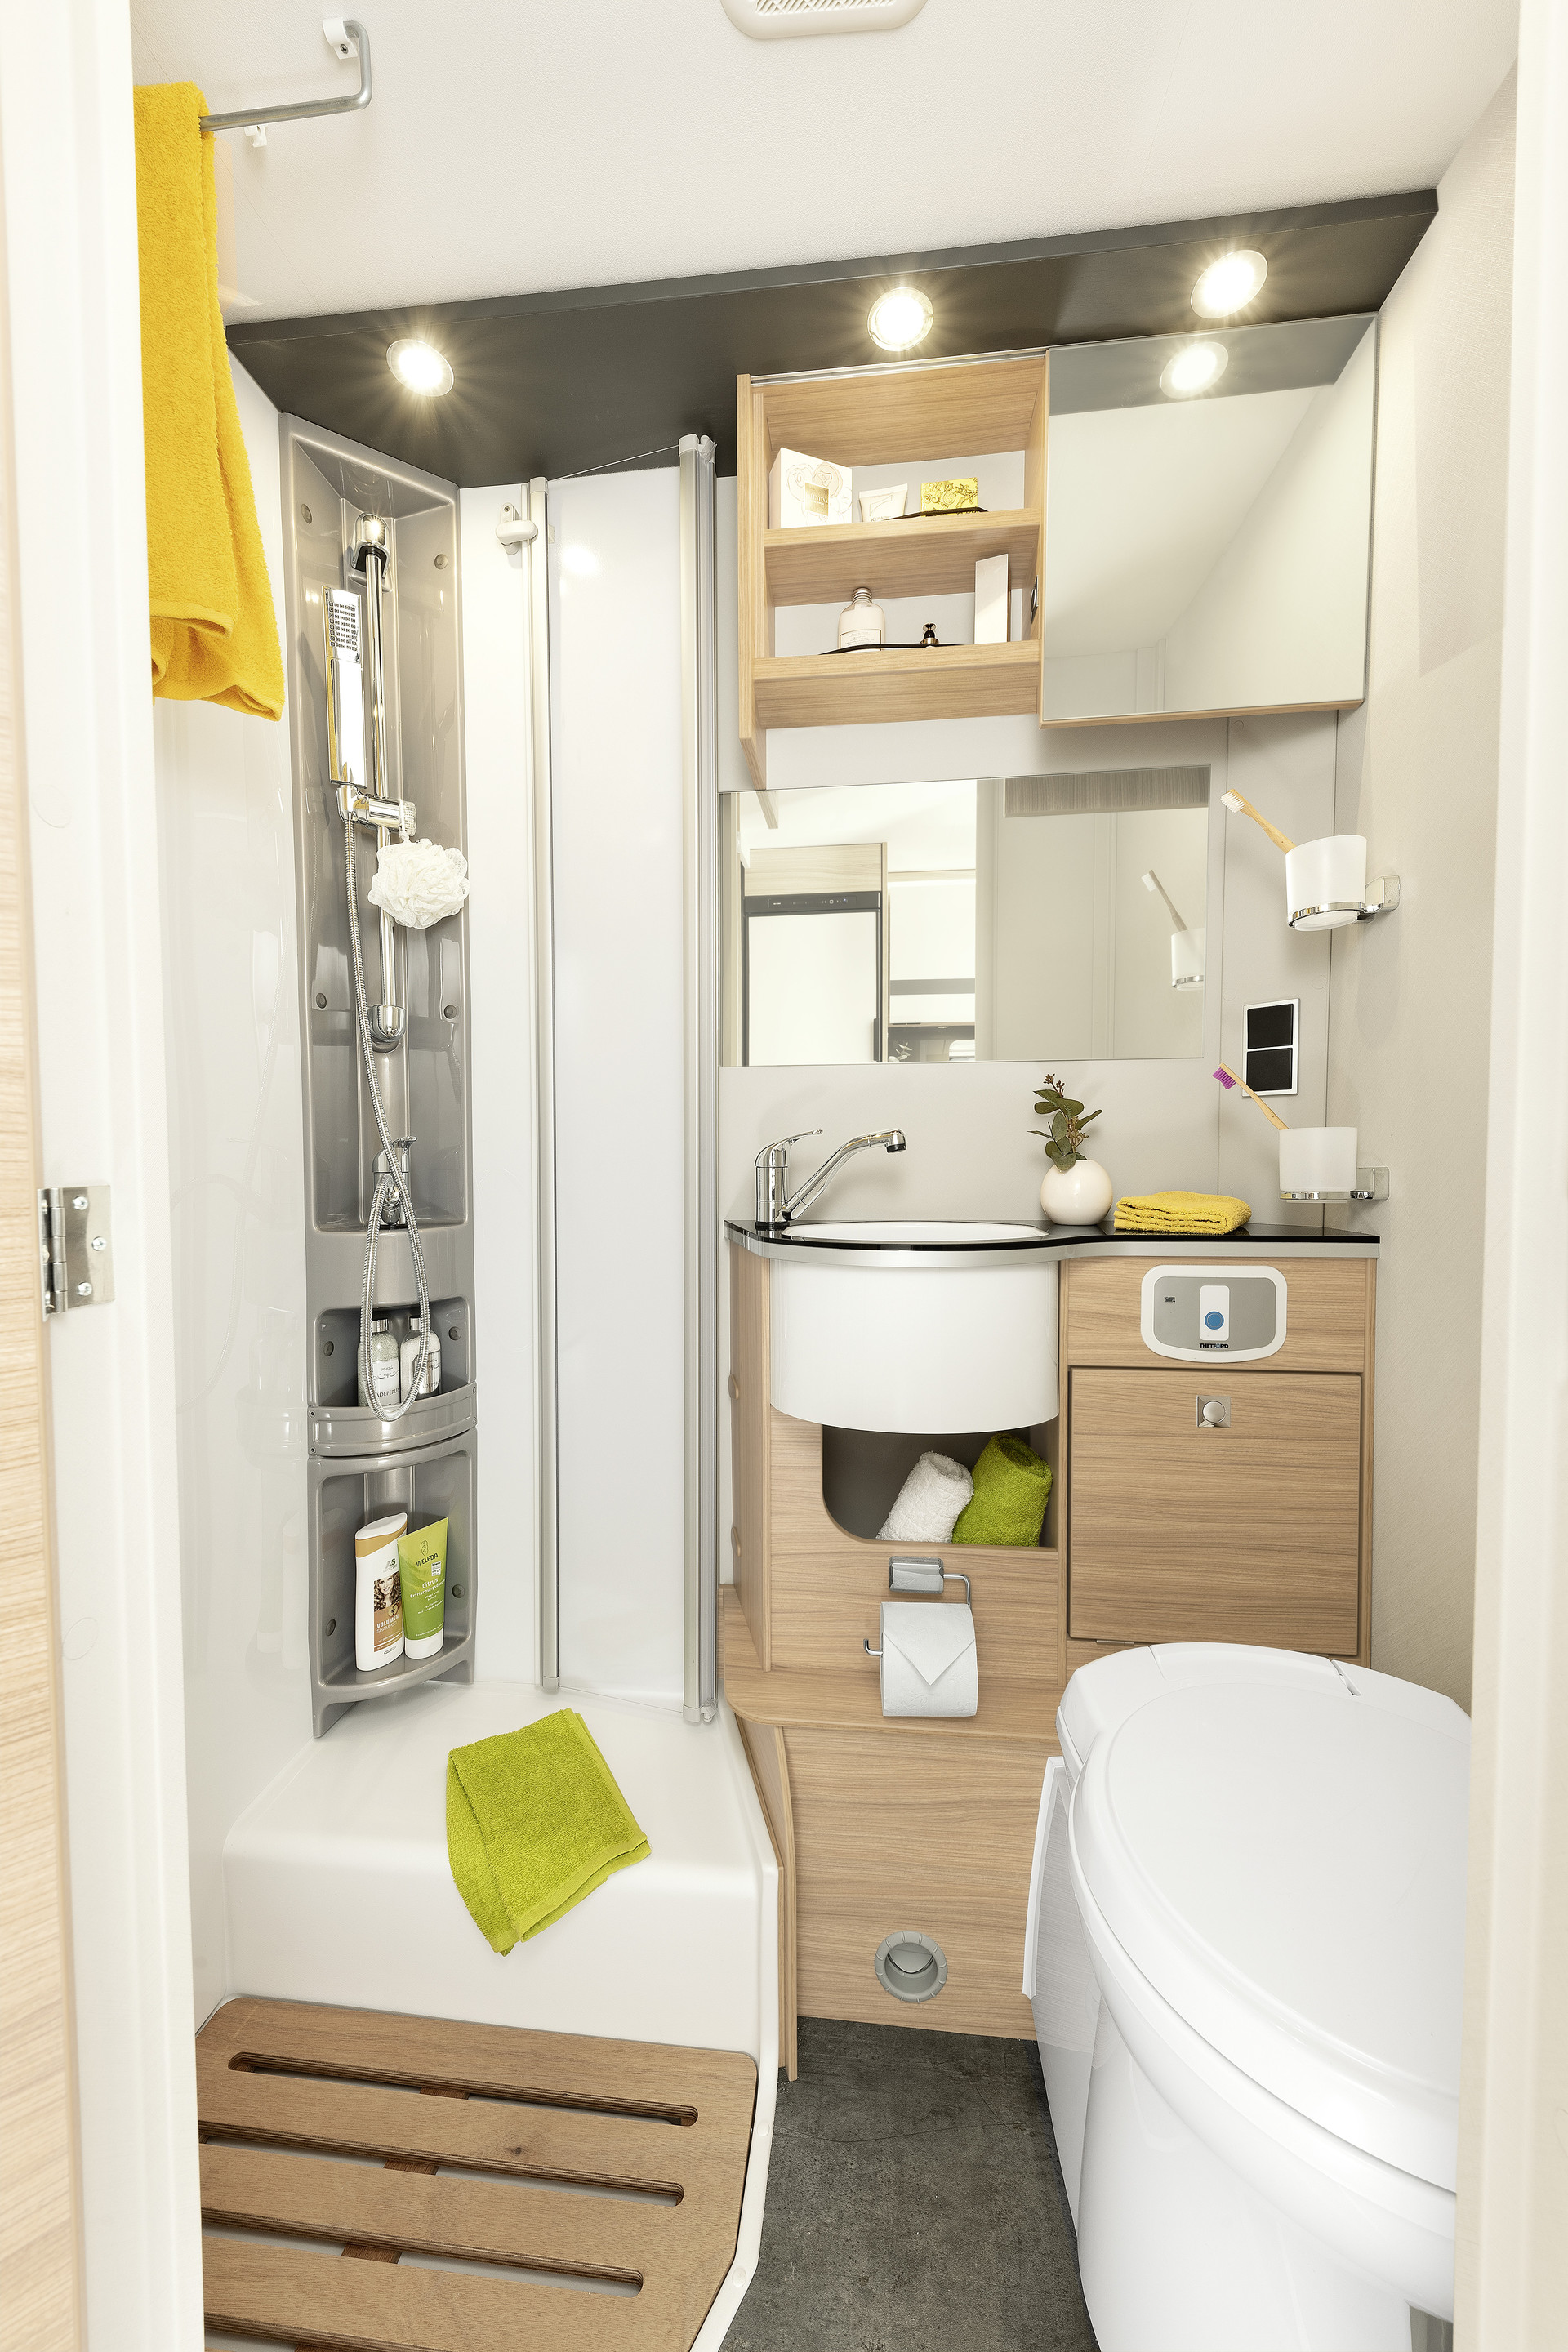 La I 6 dispone de una amplia cabina de ducha separada, un lavamanos de fácil acceso y mucho espacio de almacenamiento • I 6